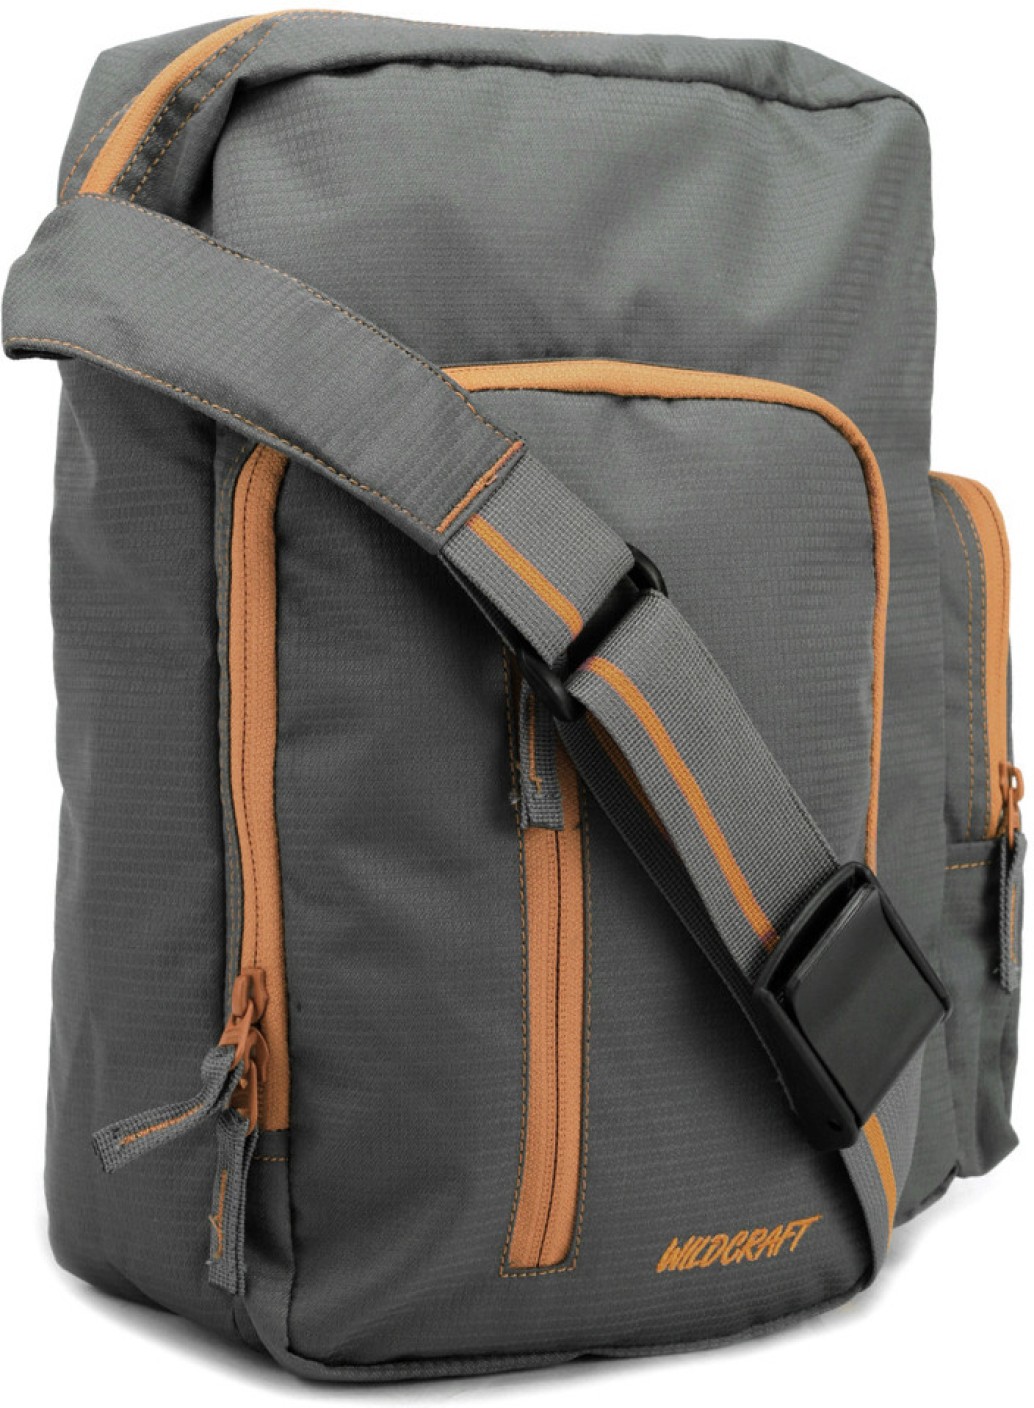 Buy Wildcraft Messenger Bag Orange Online @ Best Price in India | www.neverfullmm.com